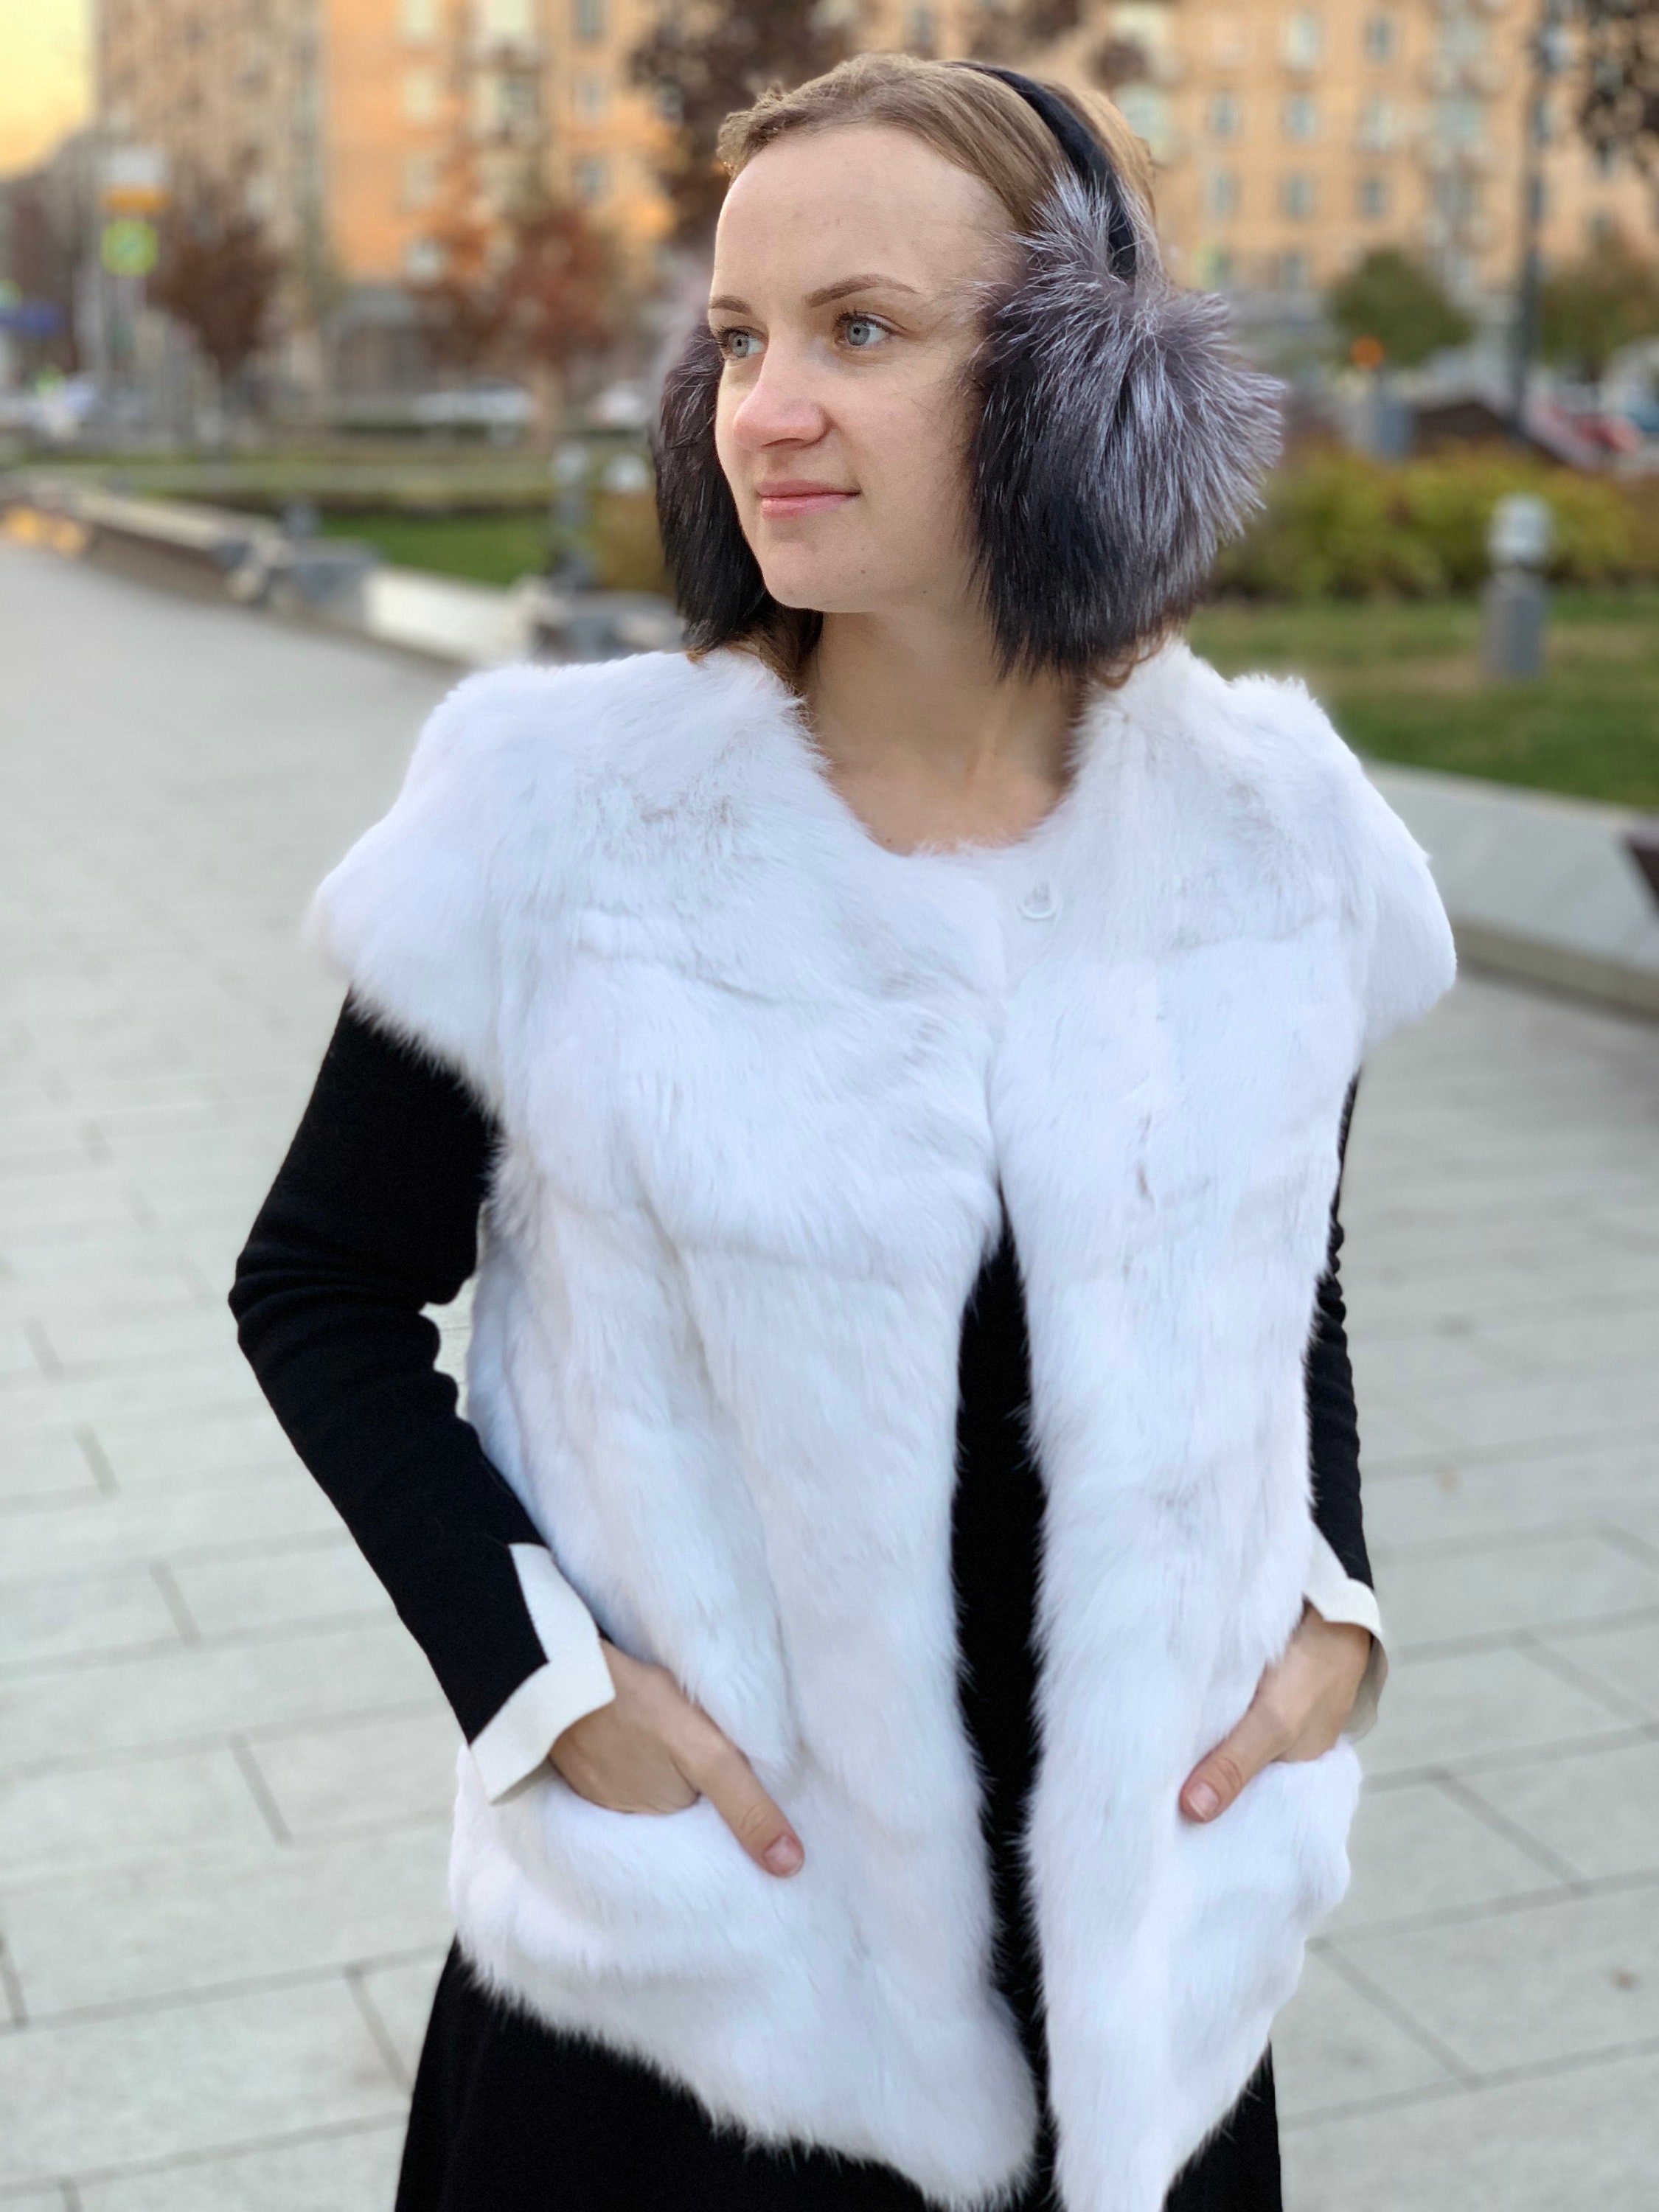 White Fur Vest for Women Rabbir Fur Coat Sleeveless - Etsy